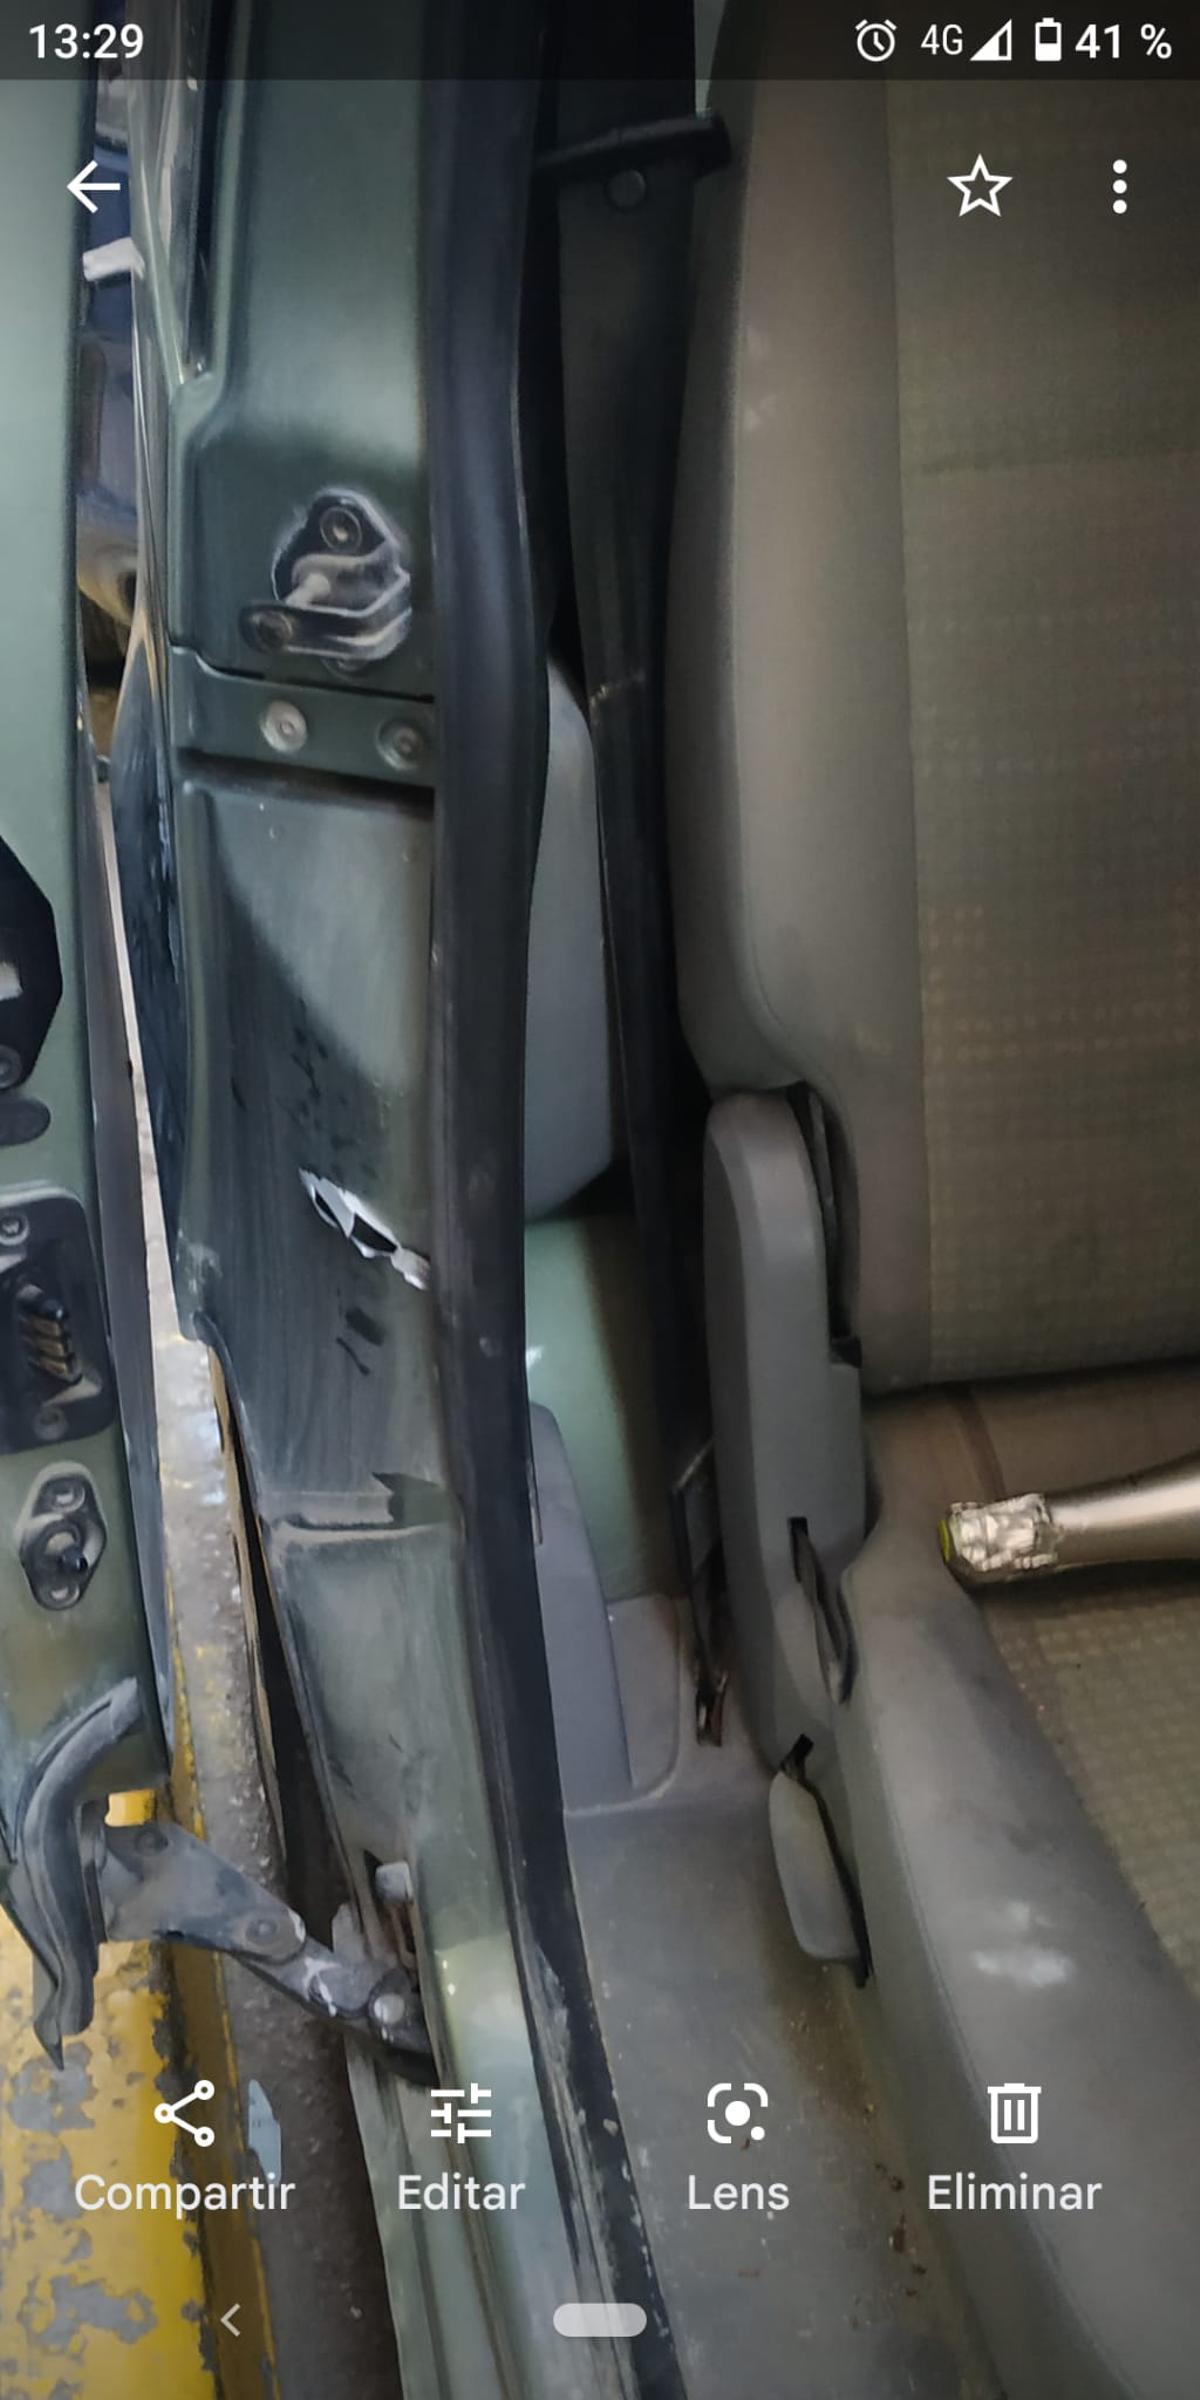 Un impacto de bala en una de las puertas del coche.